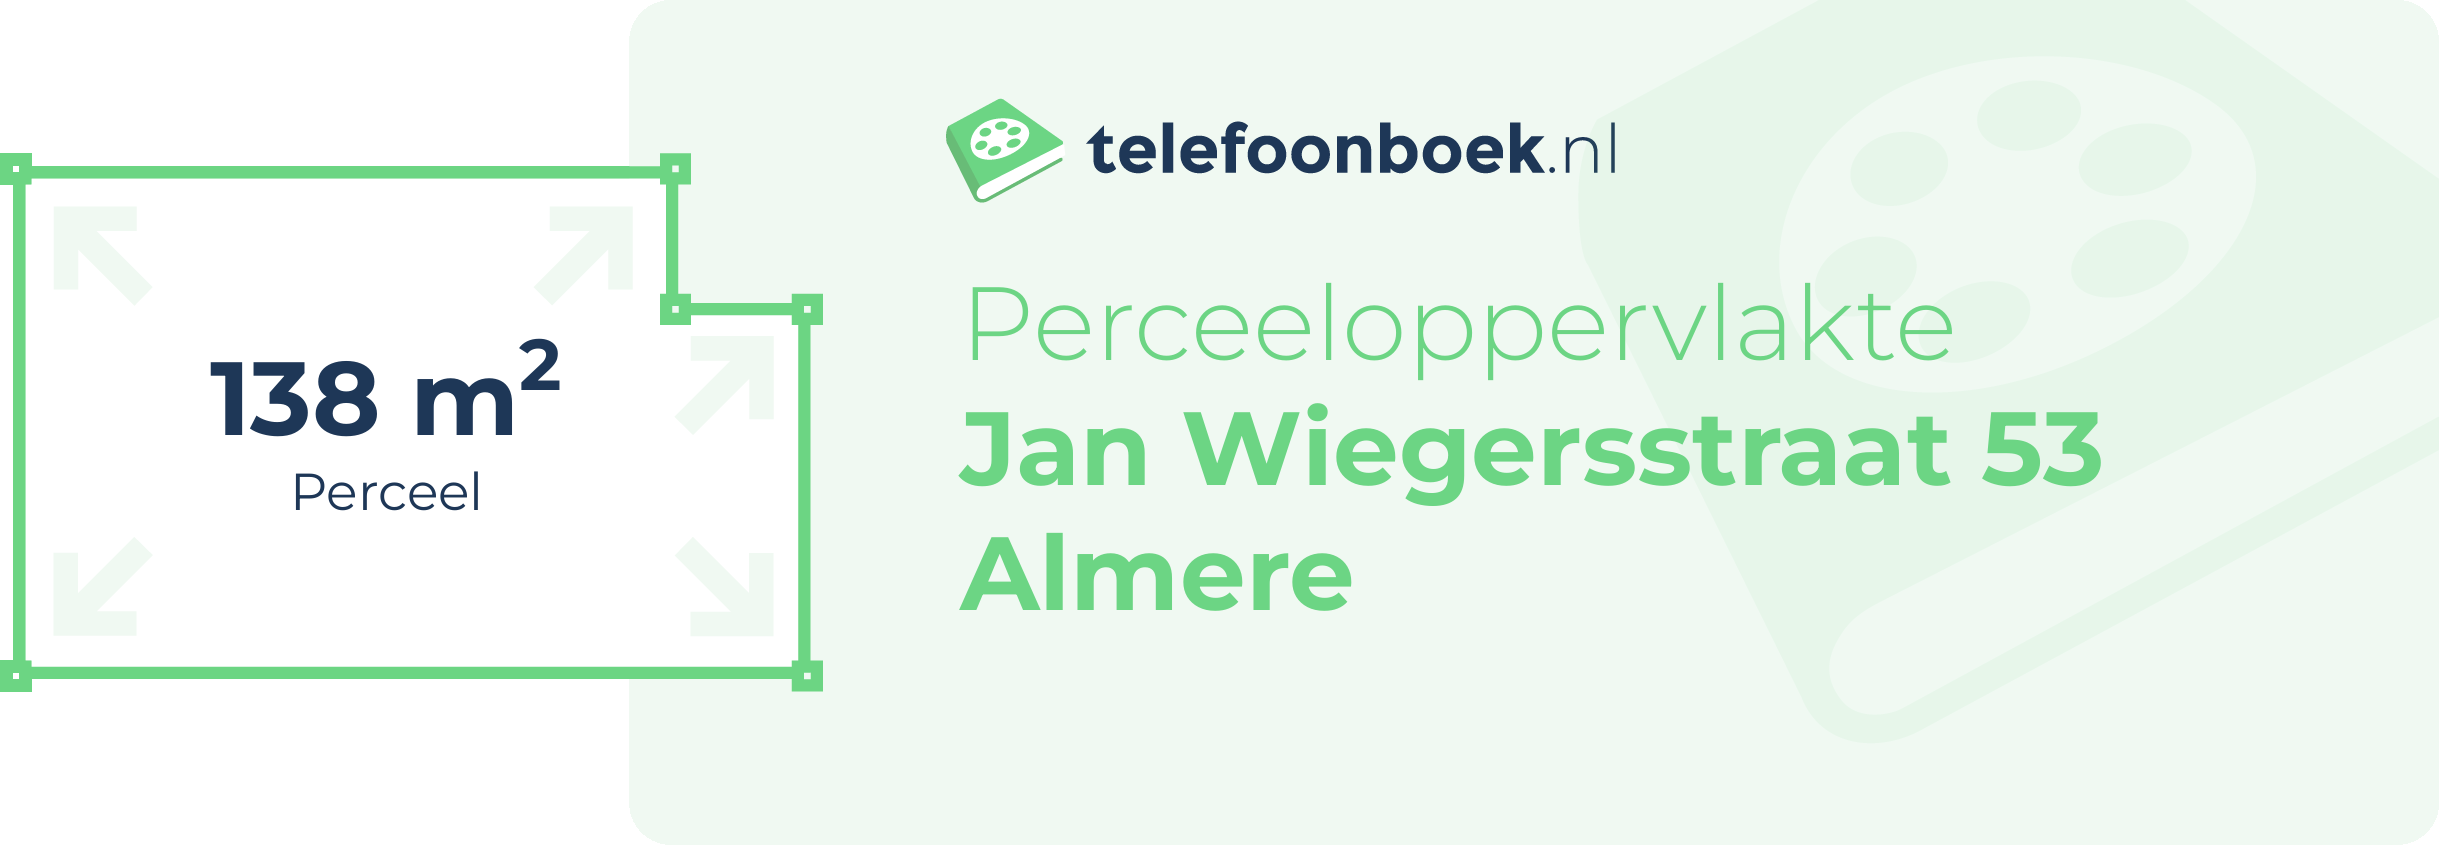 Perceeloppervlakte Jan Wiegersstraat 53 Almere